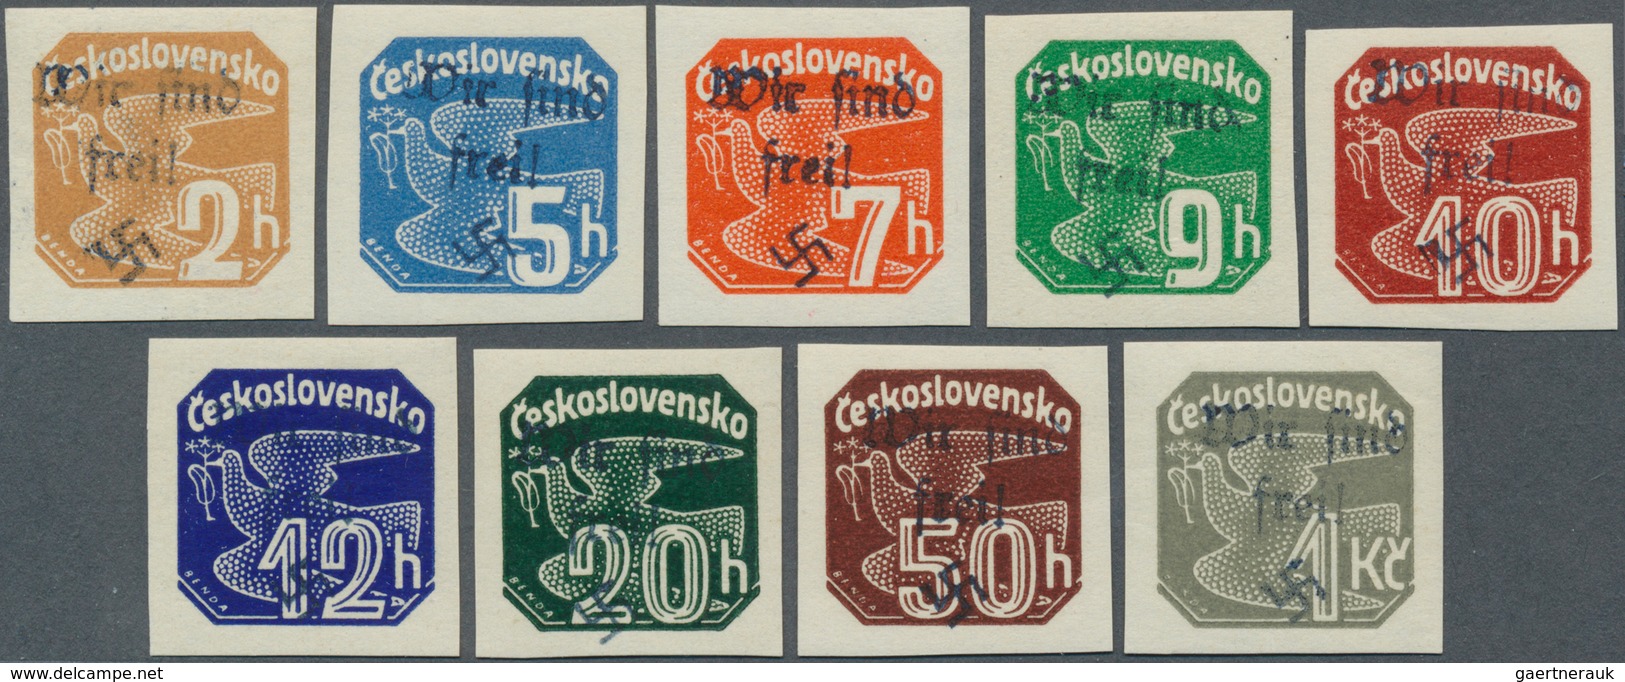 01365 Sudetenland - Reichenberg: 1938, Zeitungsmarken 2 H Bis 1 Kc., Mit Handstempelaufdruck "Wir Sind Fre - Sudetenland